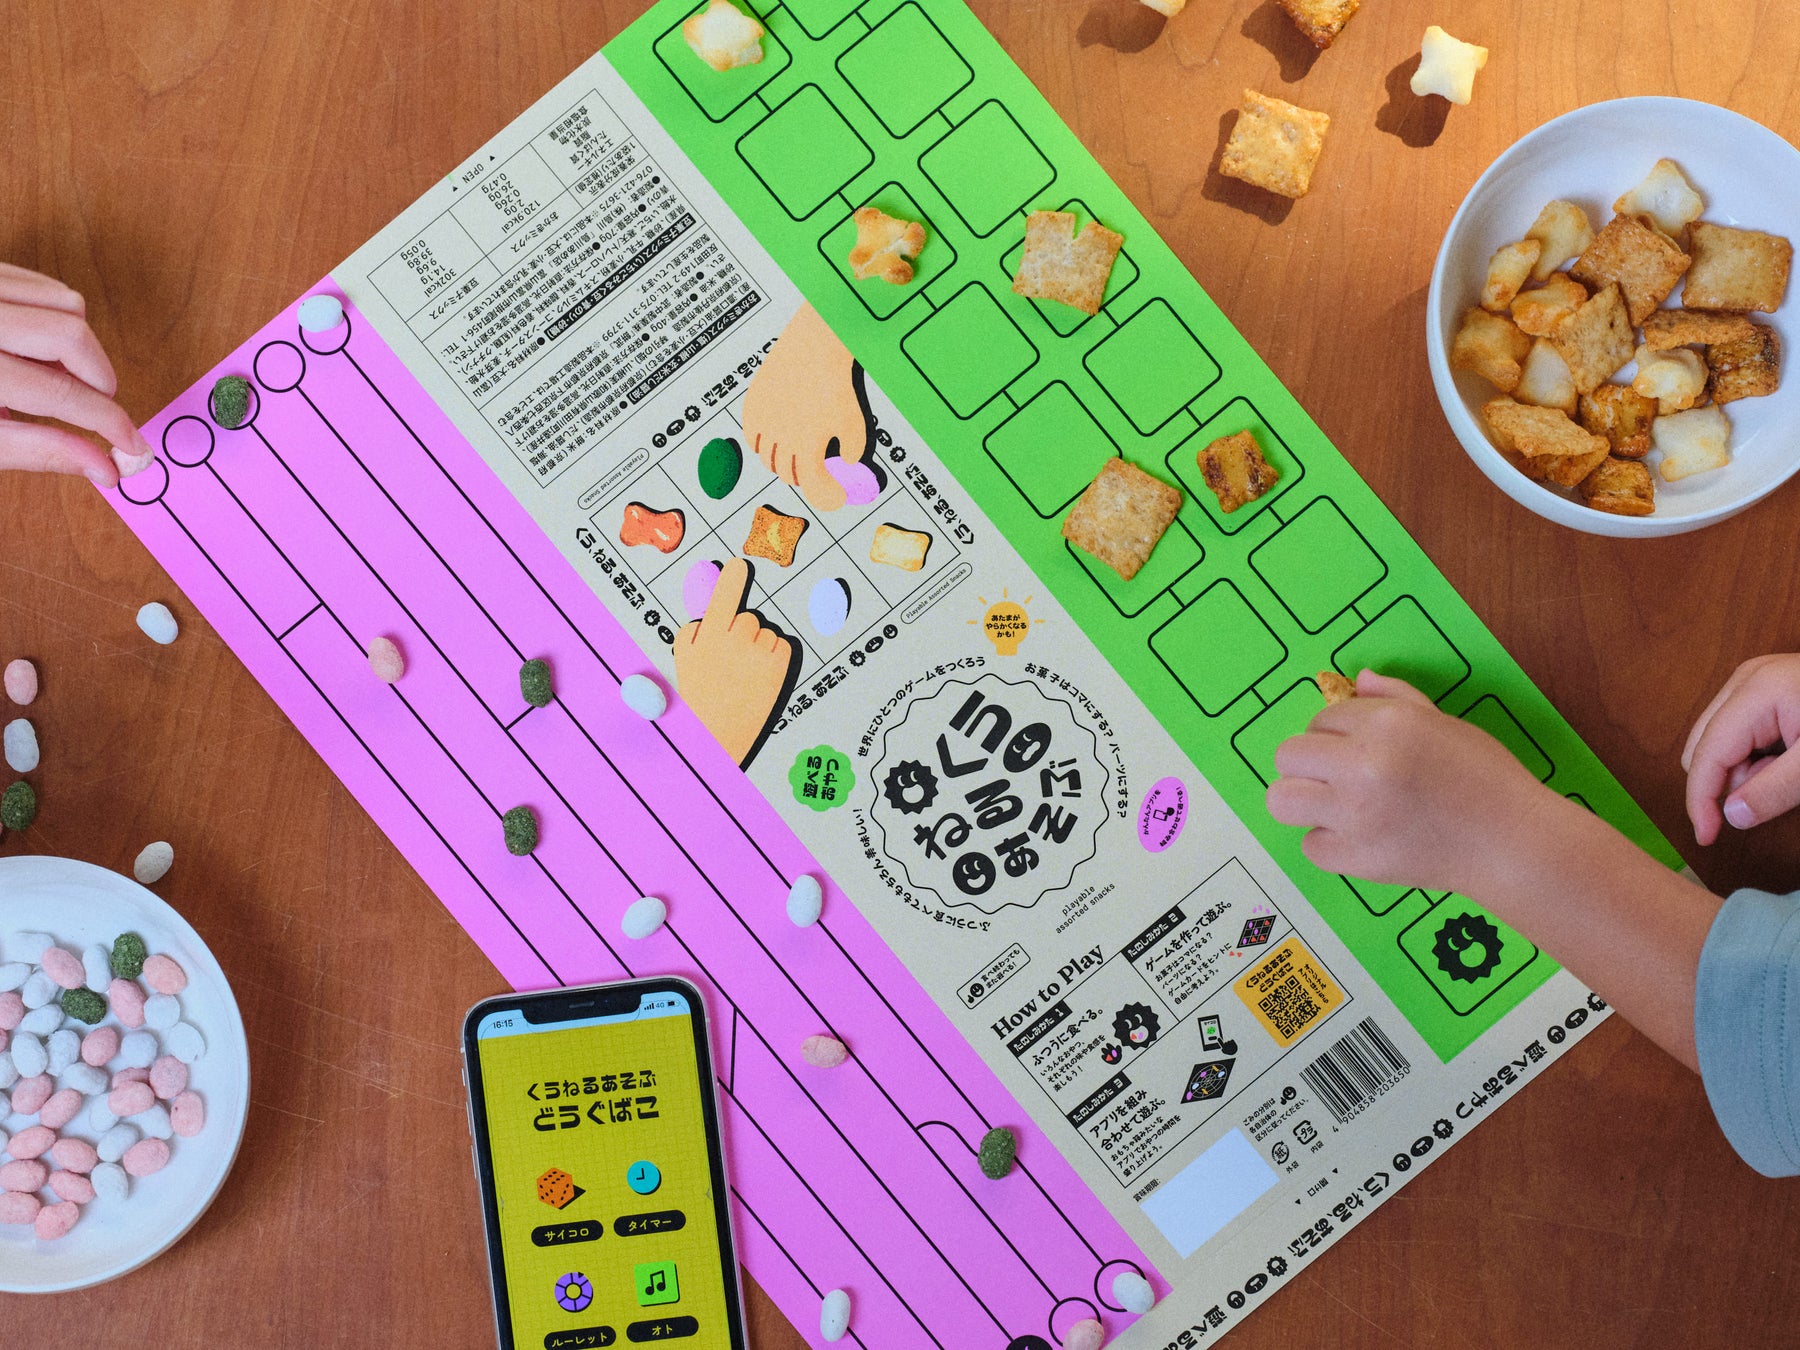 お菓子×ゲーム×アプリの新体験。遊べるおやつ「くうねるあそぶ」がKonelから発売。